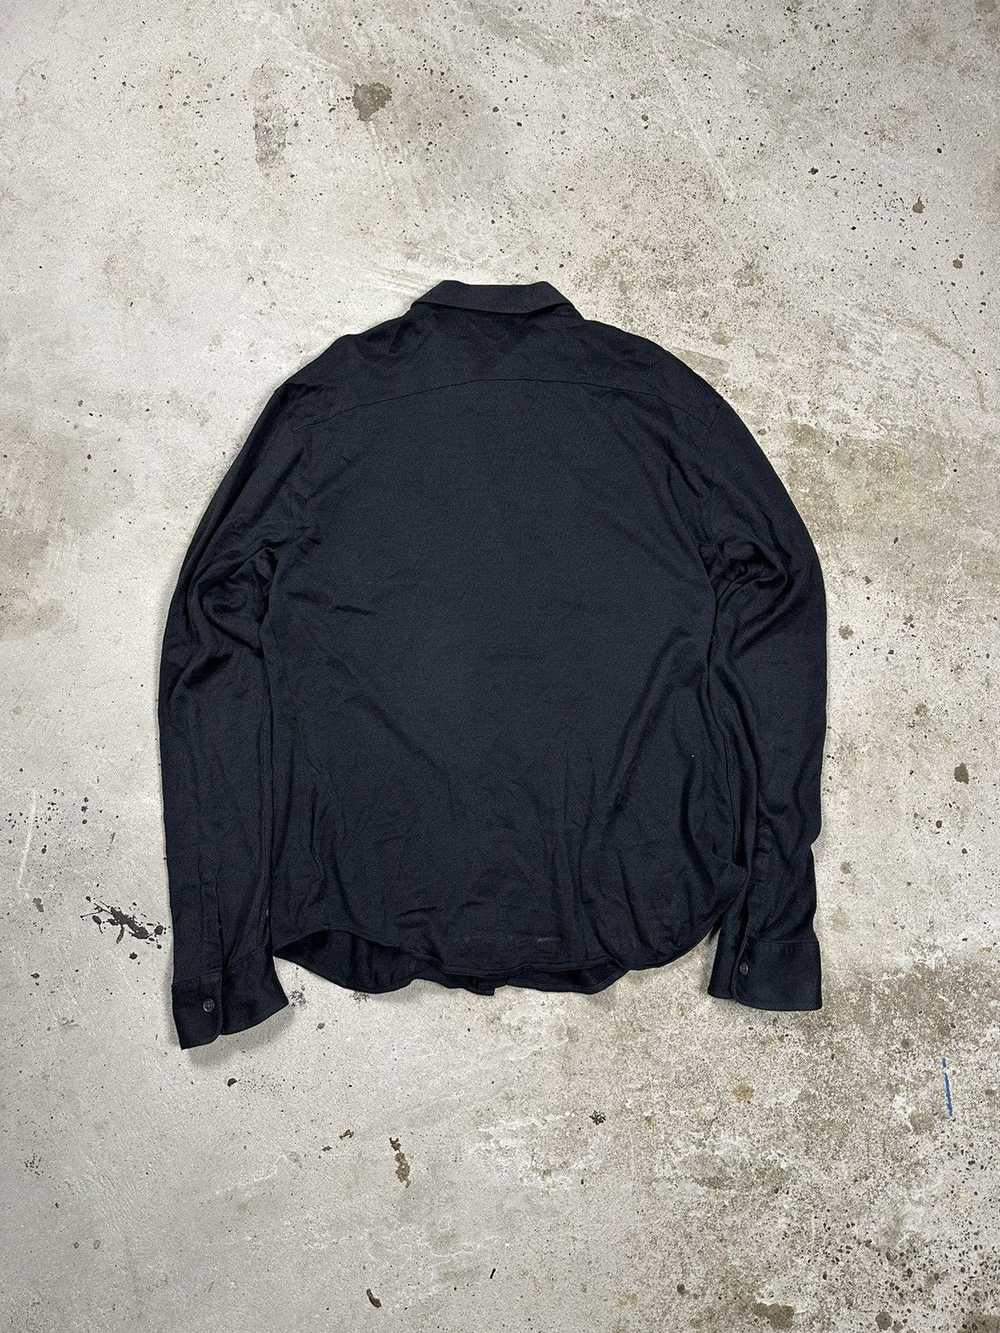 John Varvatos John Varvatos USA Silk Black Shirt … - image 2